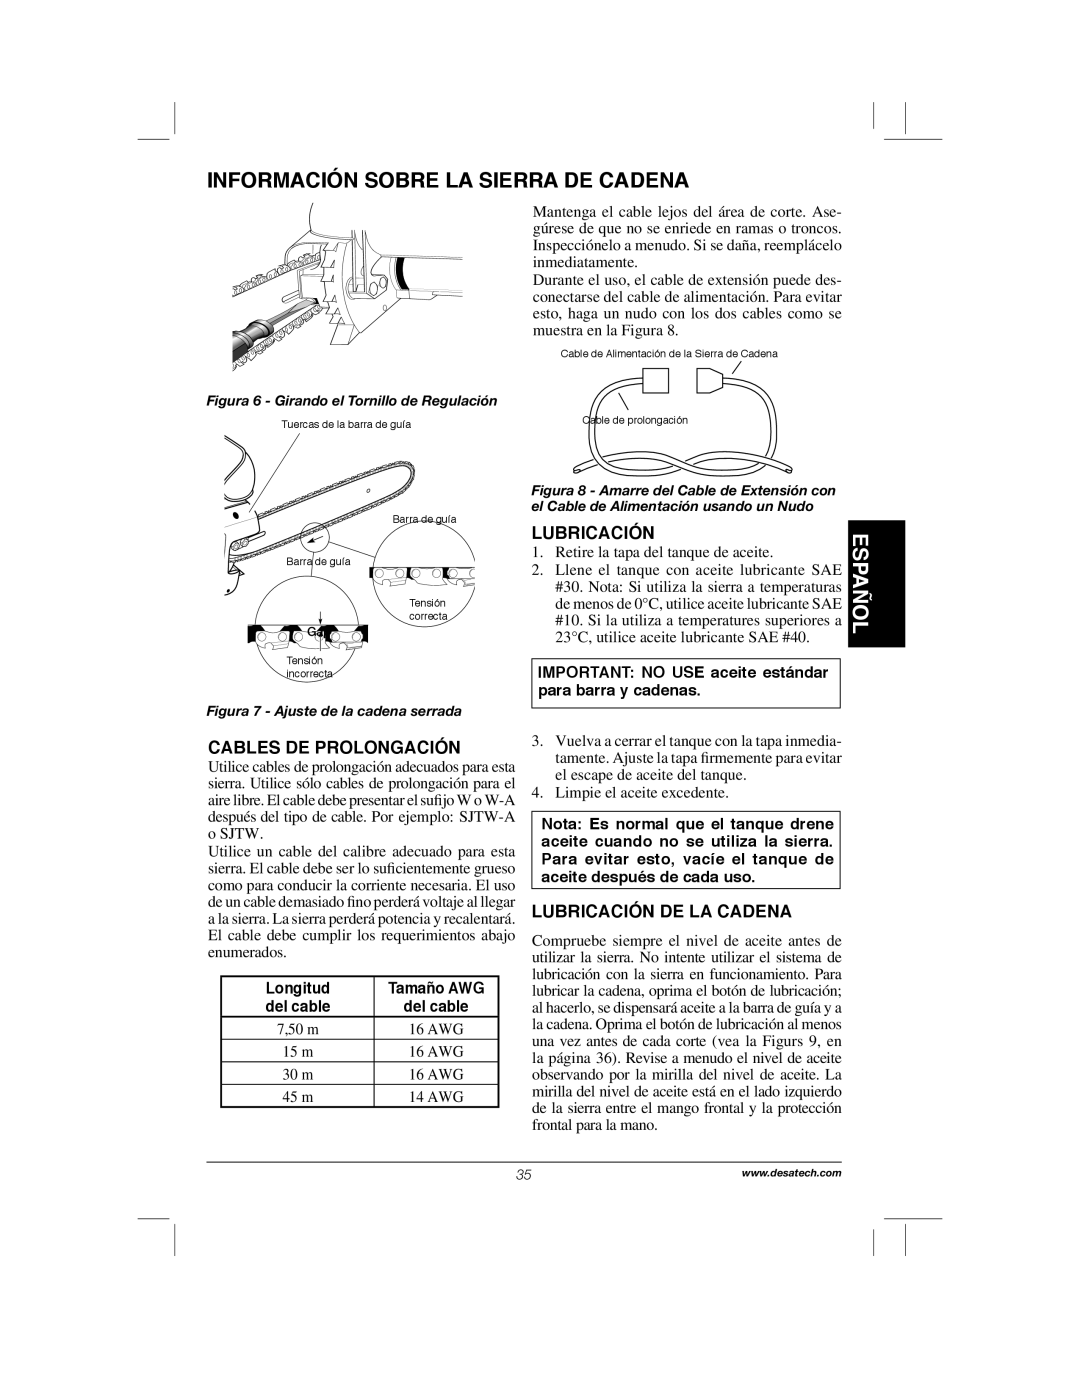 Remington Power Tools 104317, PS1510A Información Sobre La Sierra De Cadena, Español, Lubricación, Cables De Prolongación 